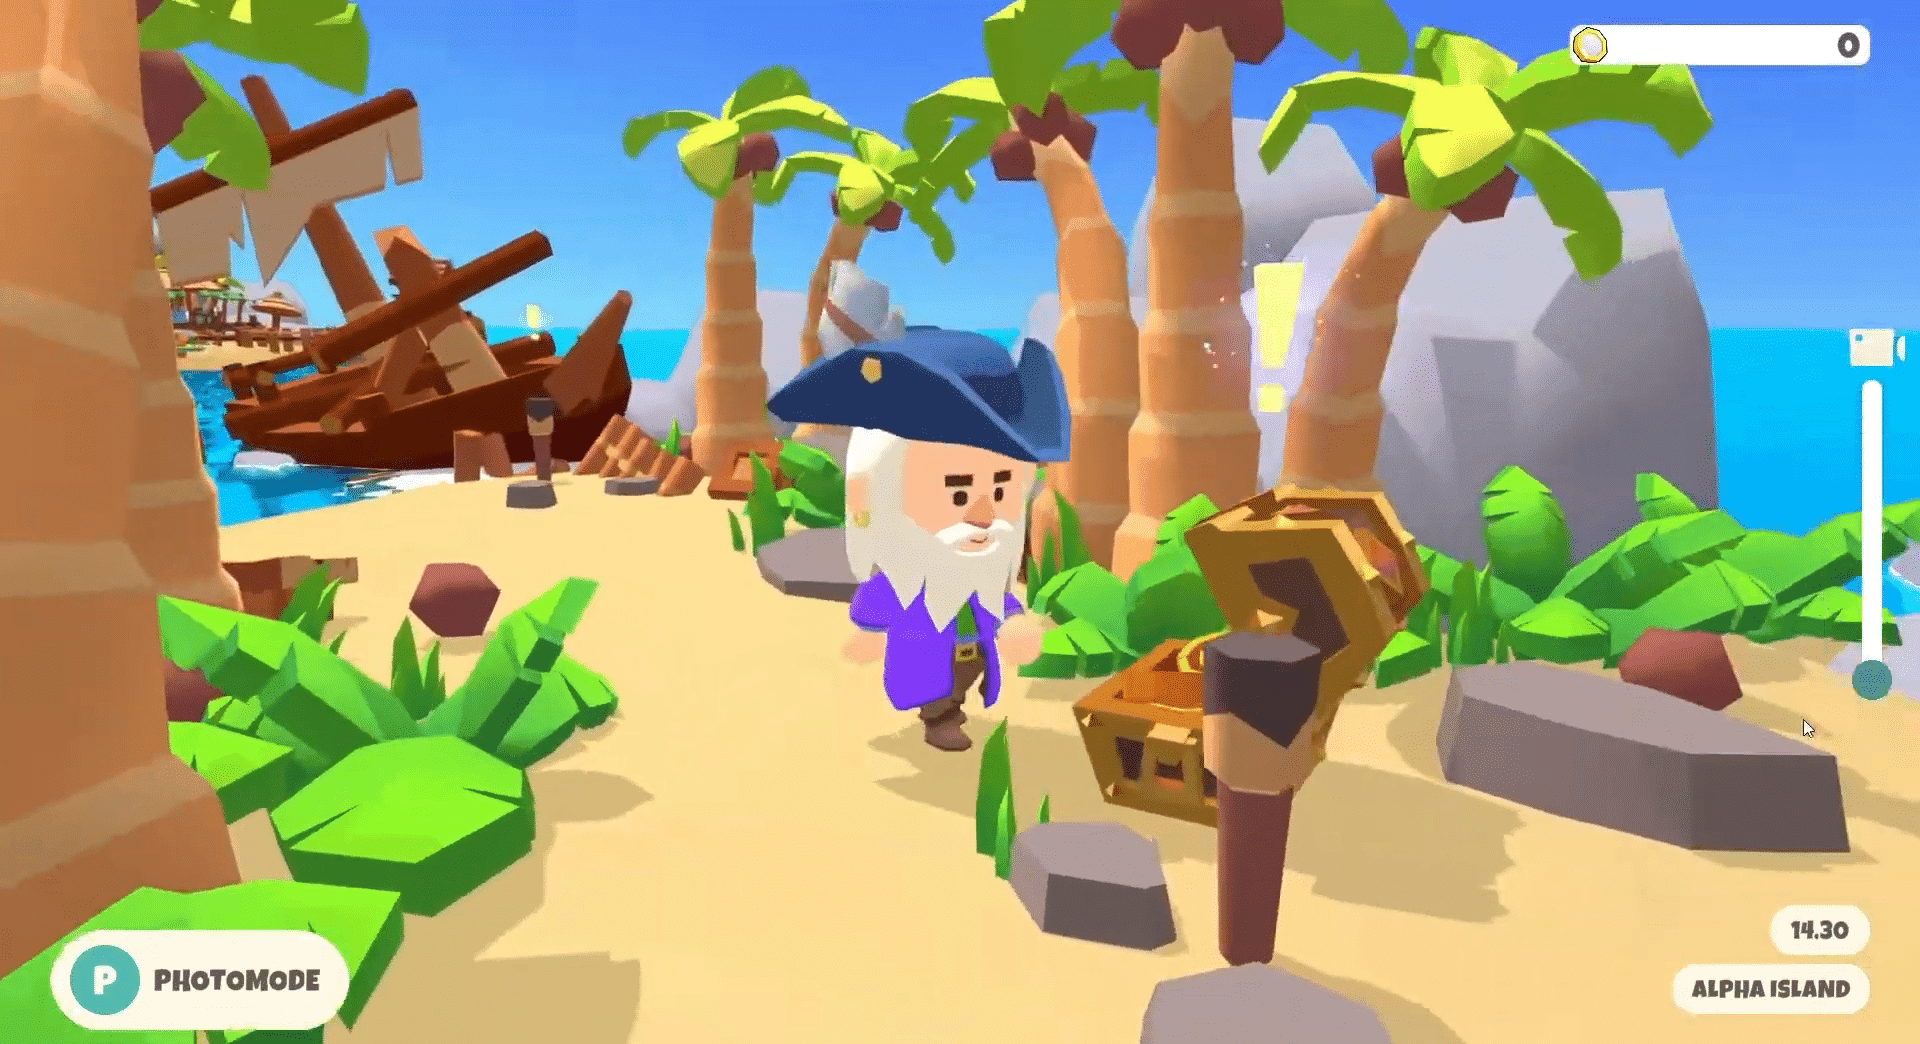 Paradise Tycoon - Harvest Season ofrece un juego web3 tranquilo que brinda a los jugadores una aventura de juego NFT relajada y divertida.